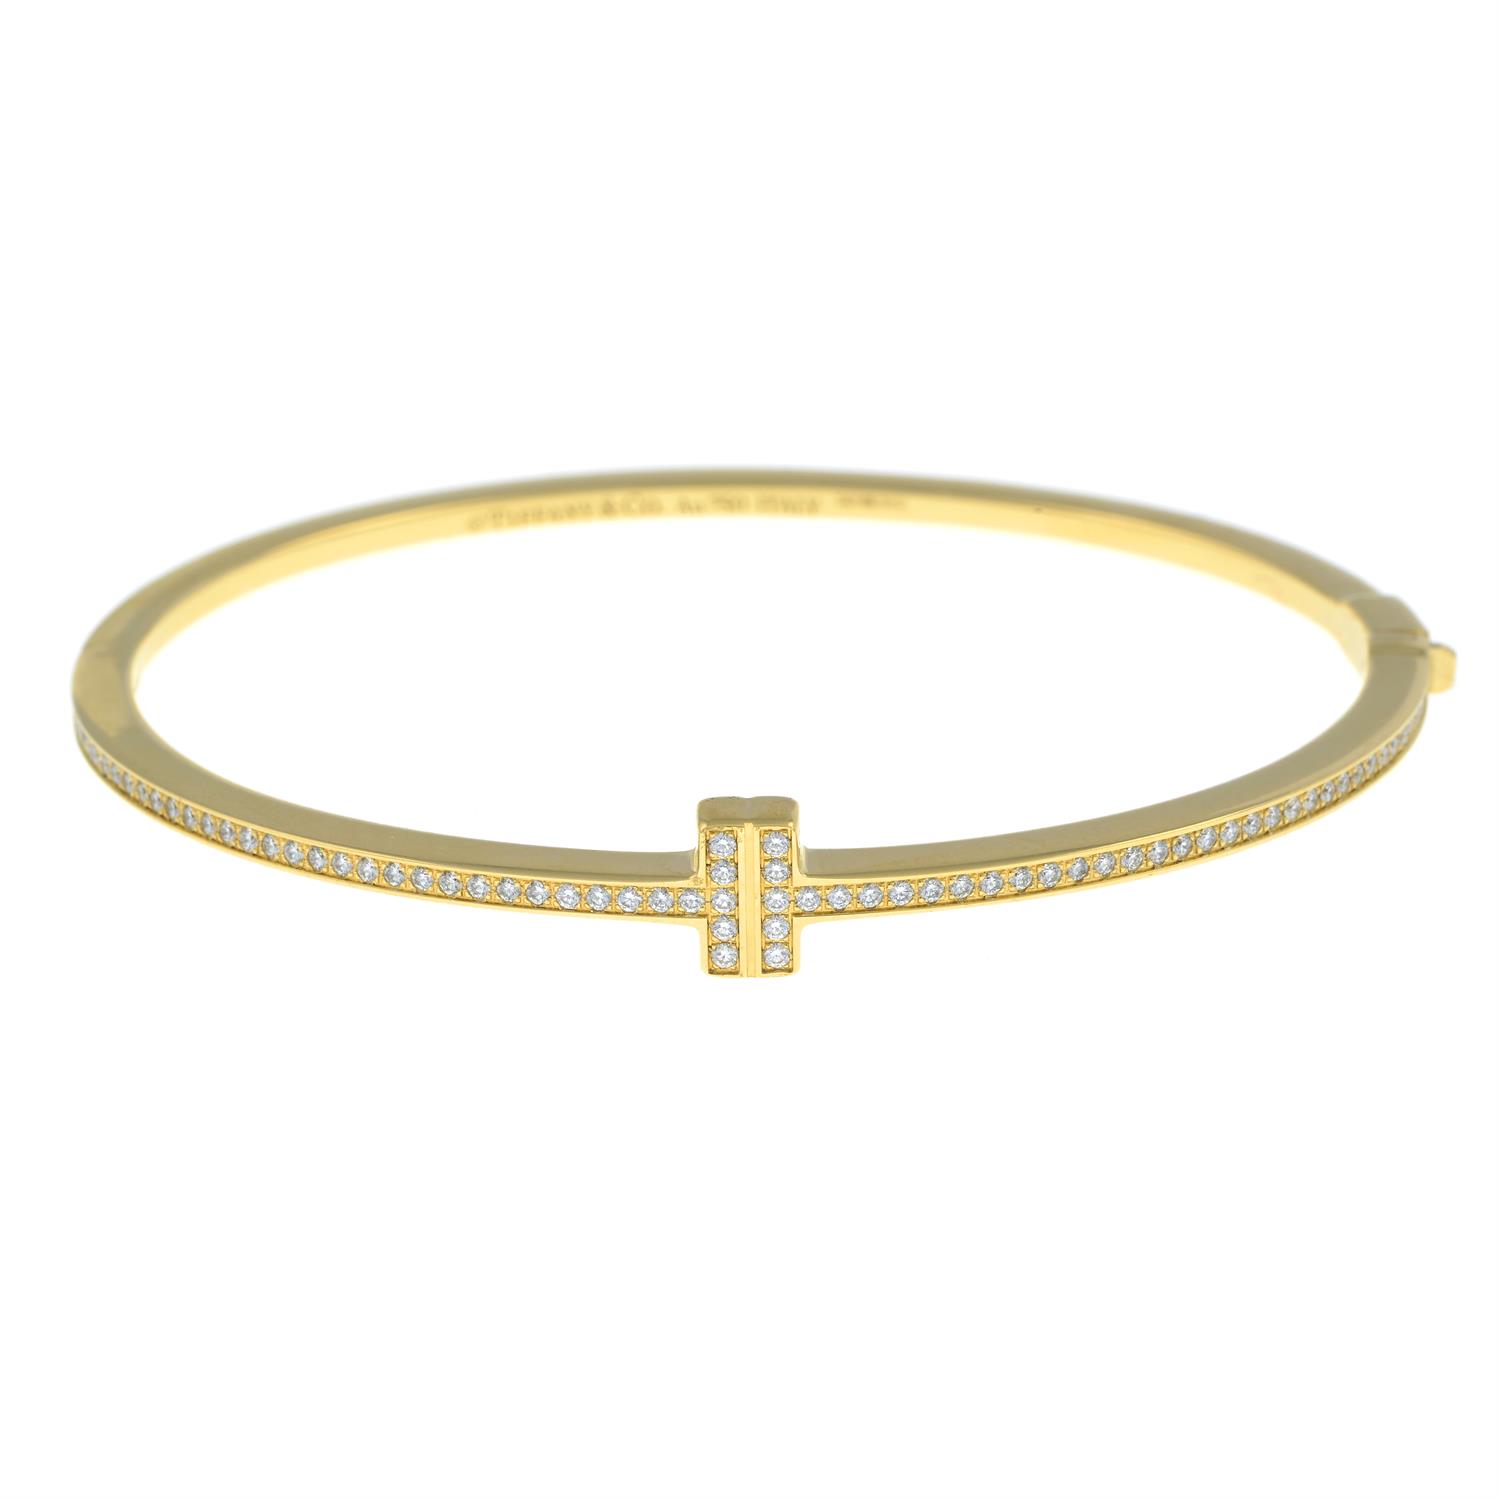 Gold diamond 'Tiffany T' bangle, by Tiffany & Co. - Image 2 of 4